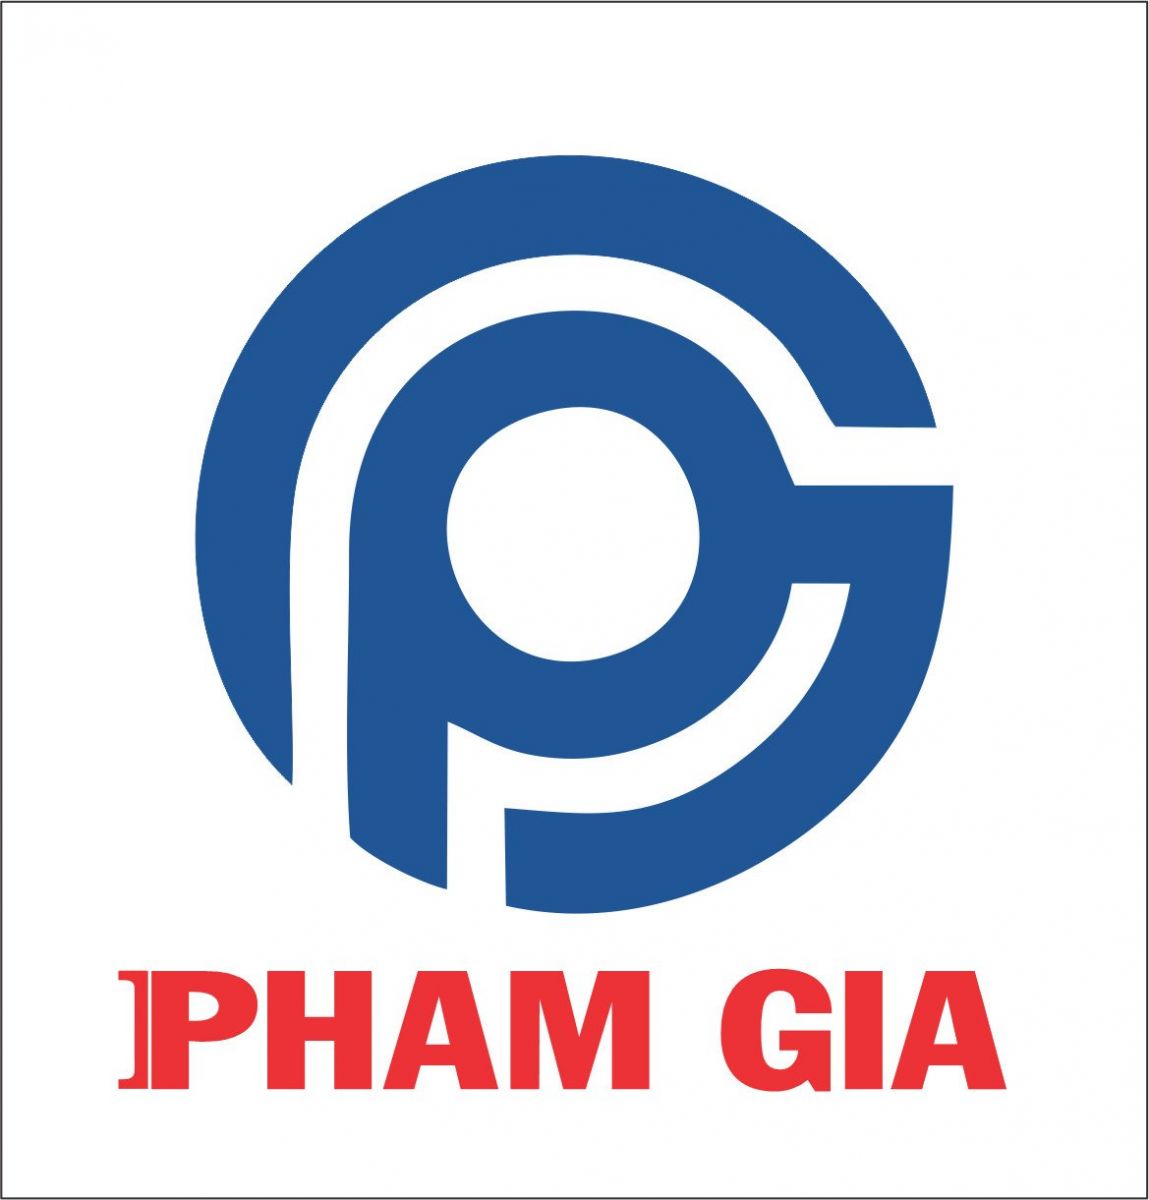 Phạm Gia logo